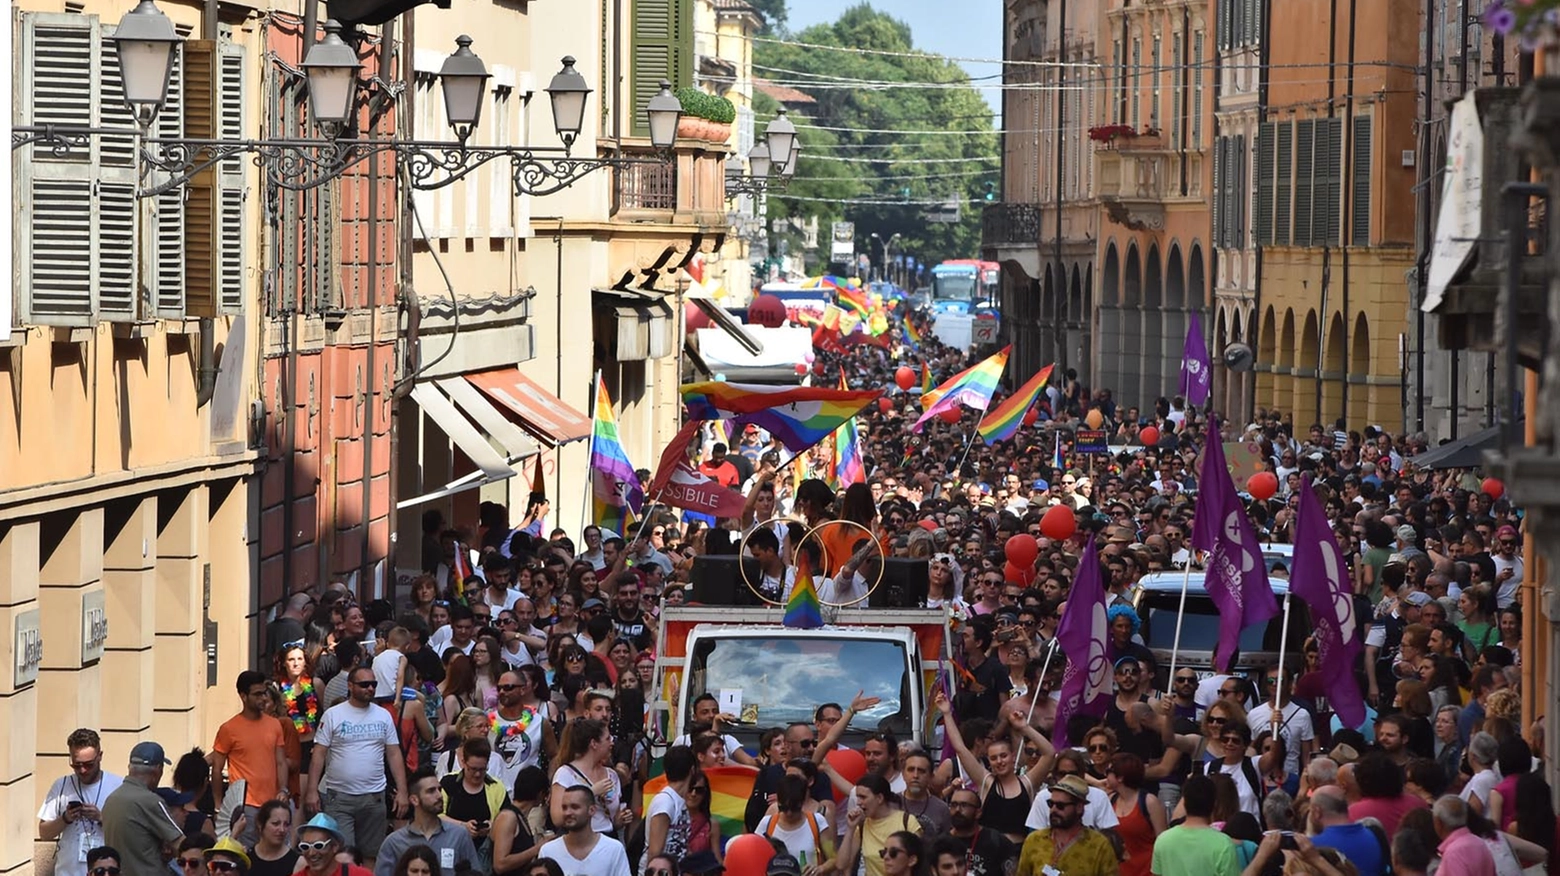 Il corteo del Gay Pride sfila per le vie del centro (Artioli)